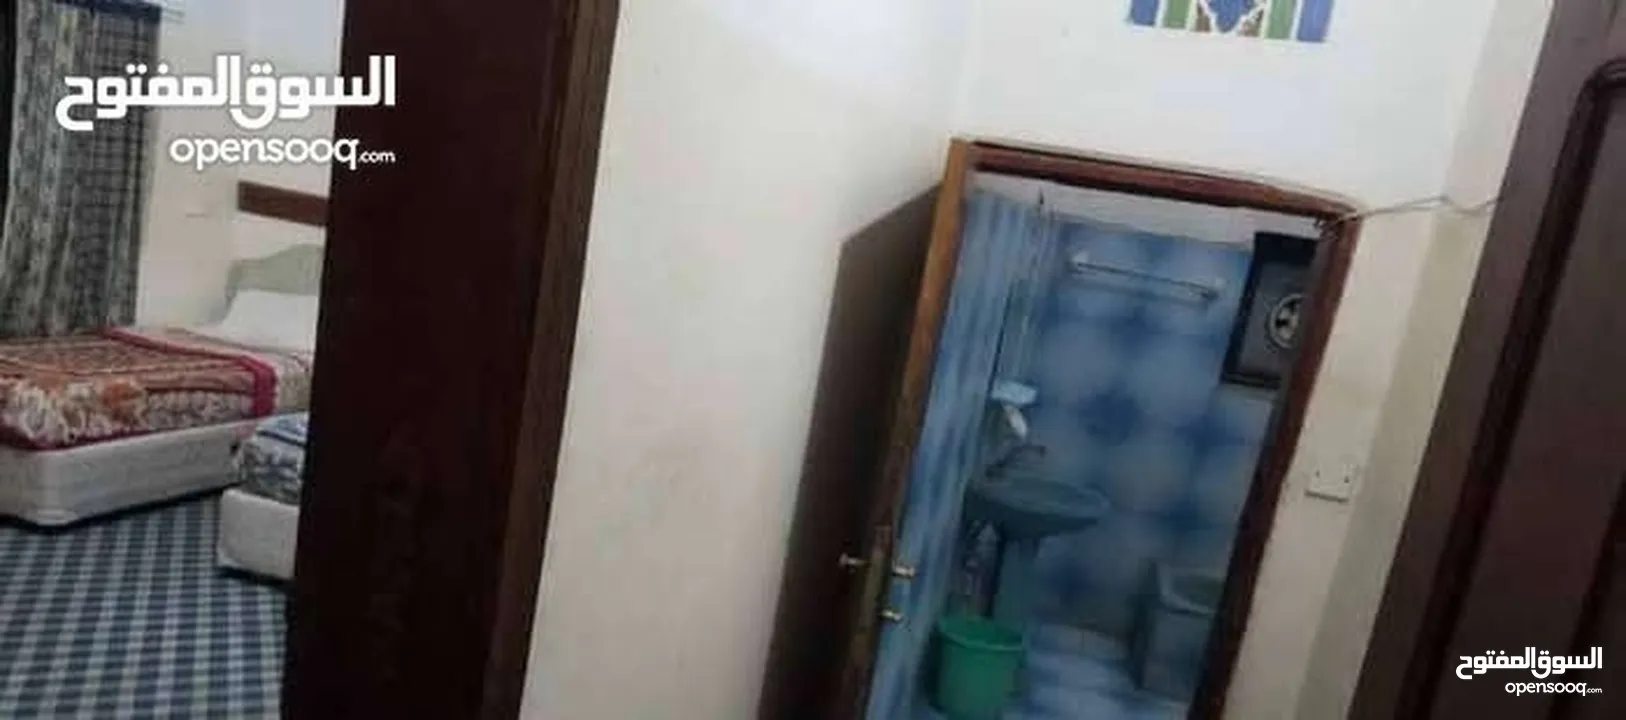 للايجار غرفه وحمام مفروشه حلوه ونظيفه  موجوده في الدايري قريب جامعة صنعاء الجديد